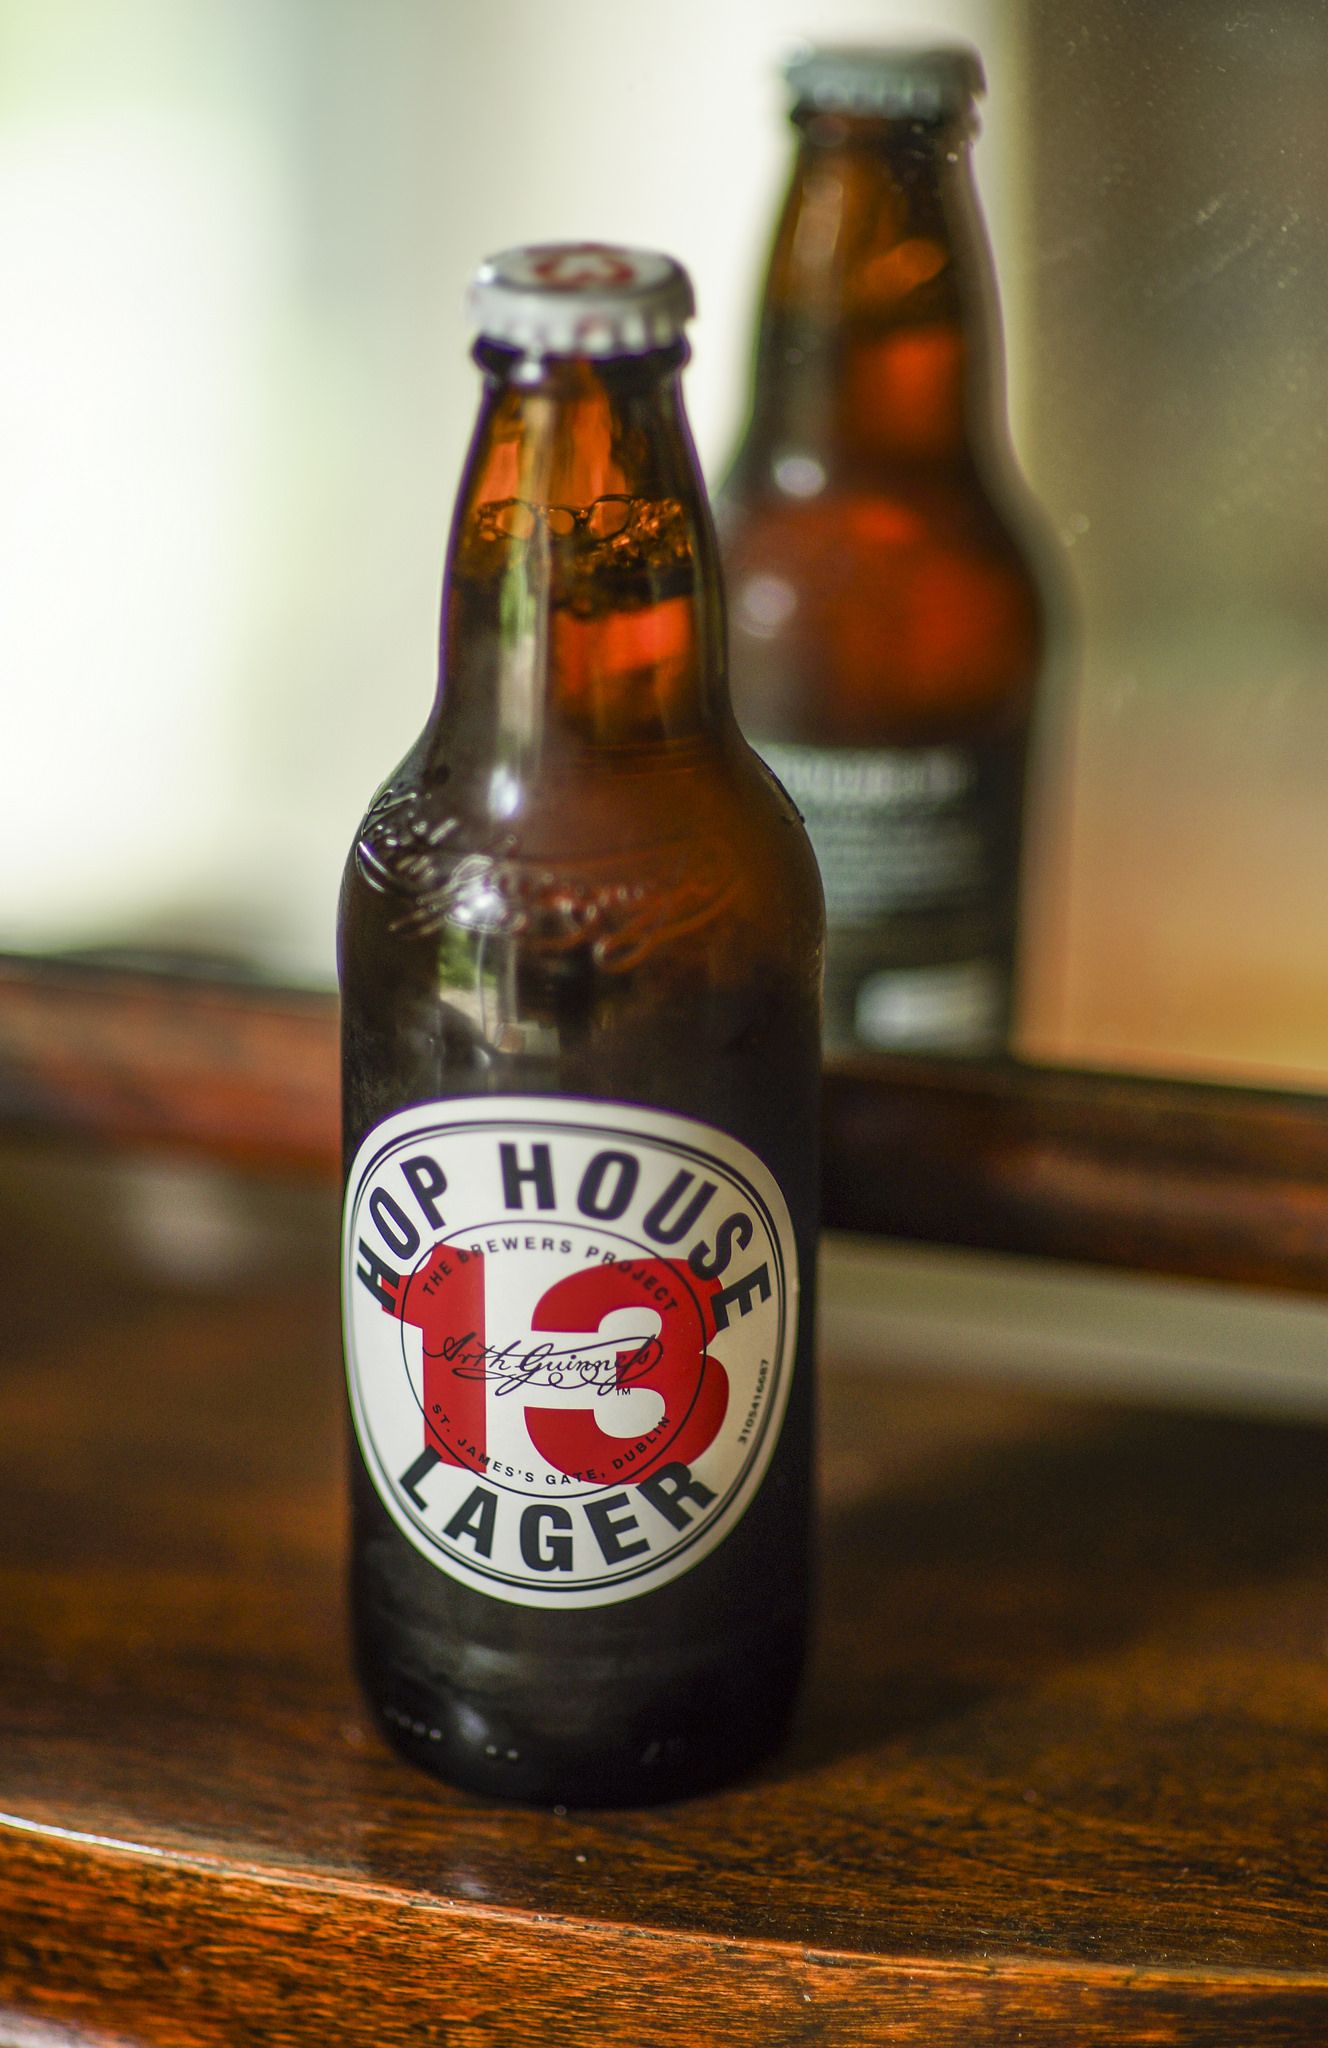 Bottle of Guinness lager - Hop House 13